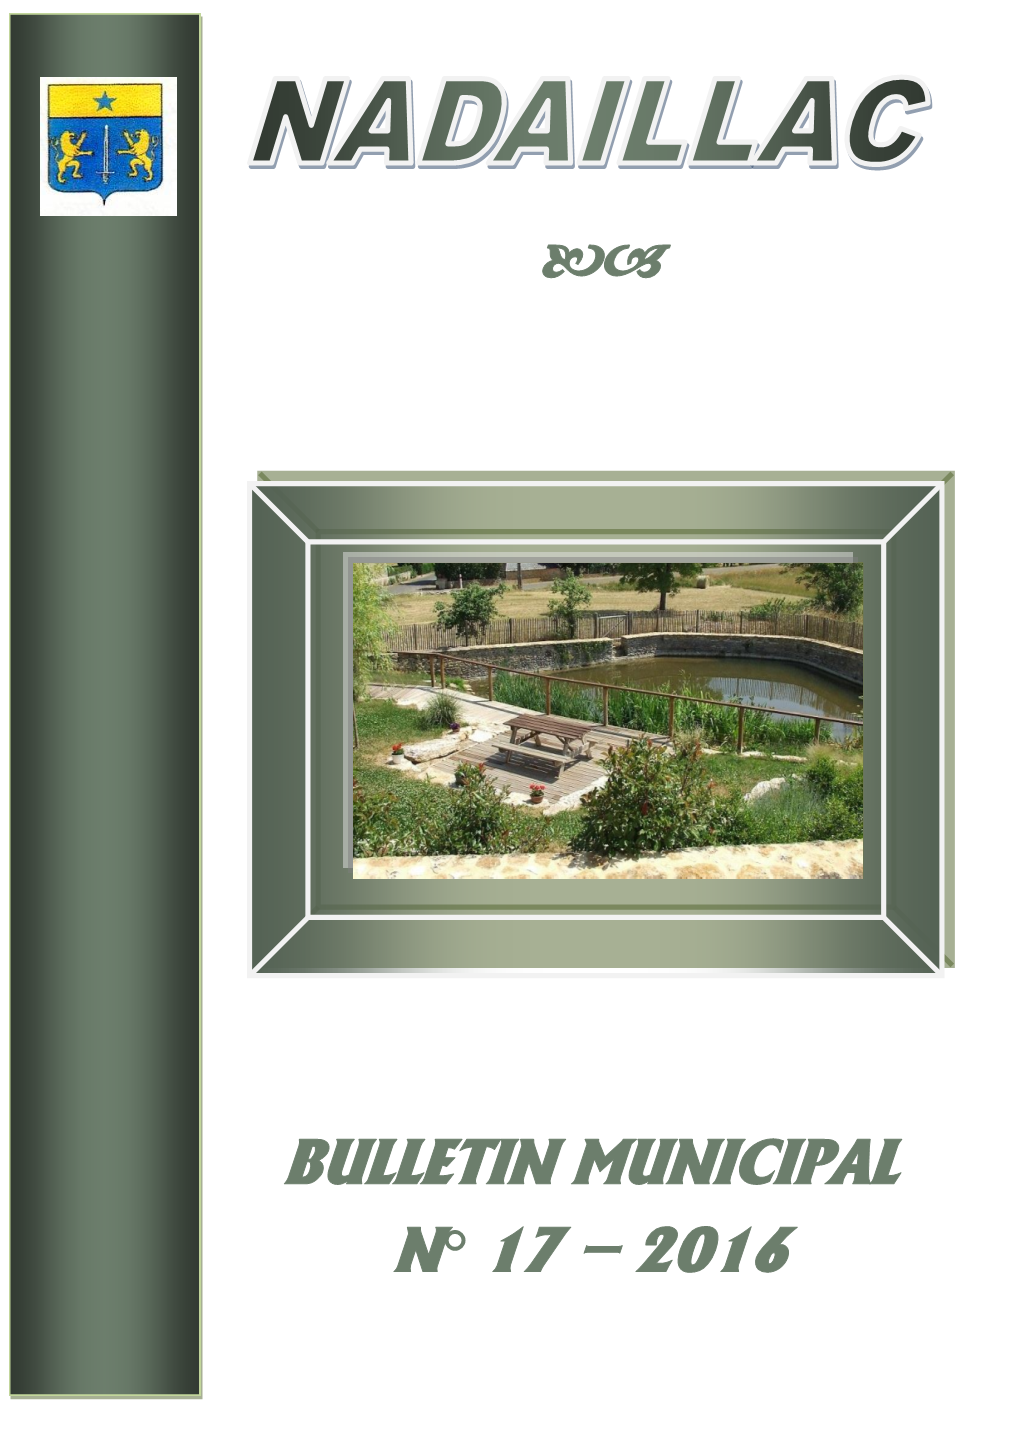 Bulletin Municipal N° 17 – 2016